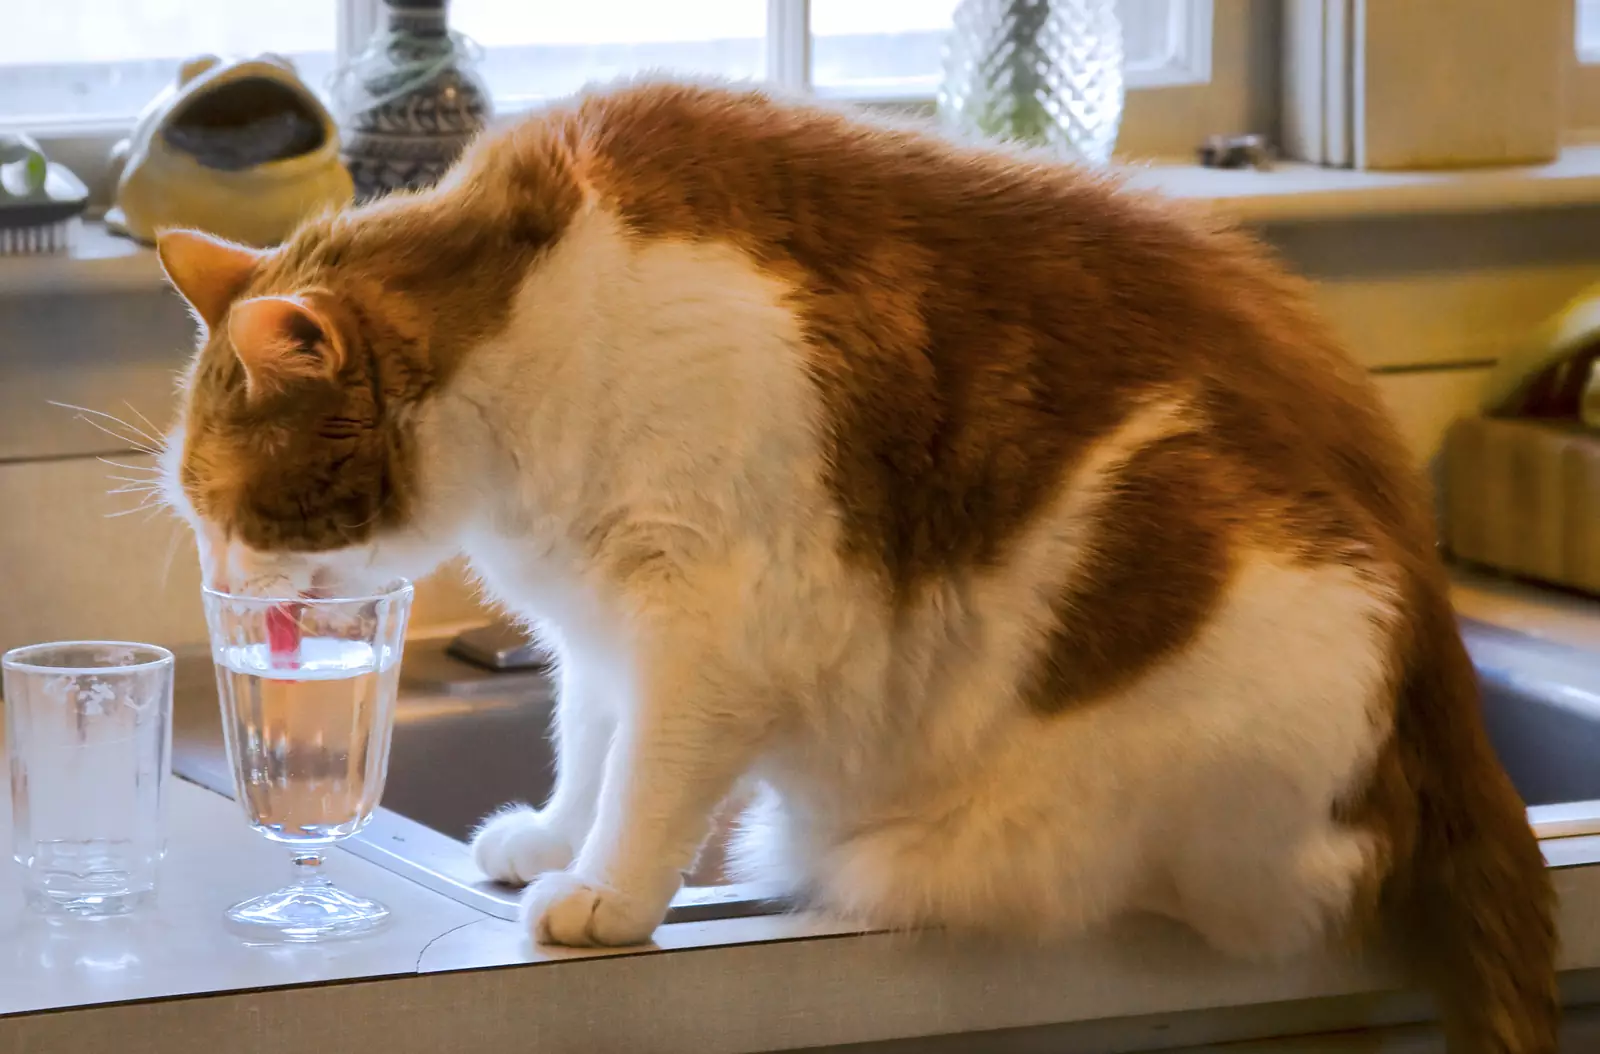 Некоторым кошкам нравится пить из своей миски, в то время как другие предпочитают воду из-под крана или из хозяйской кружки.